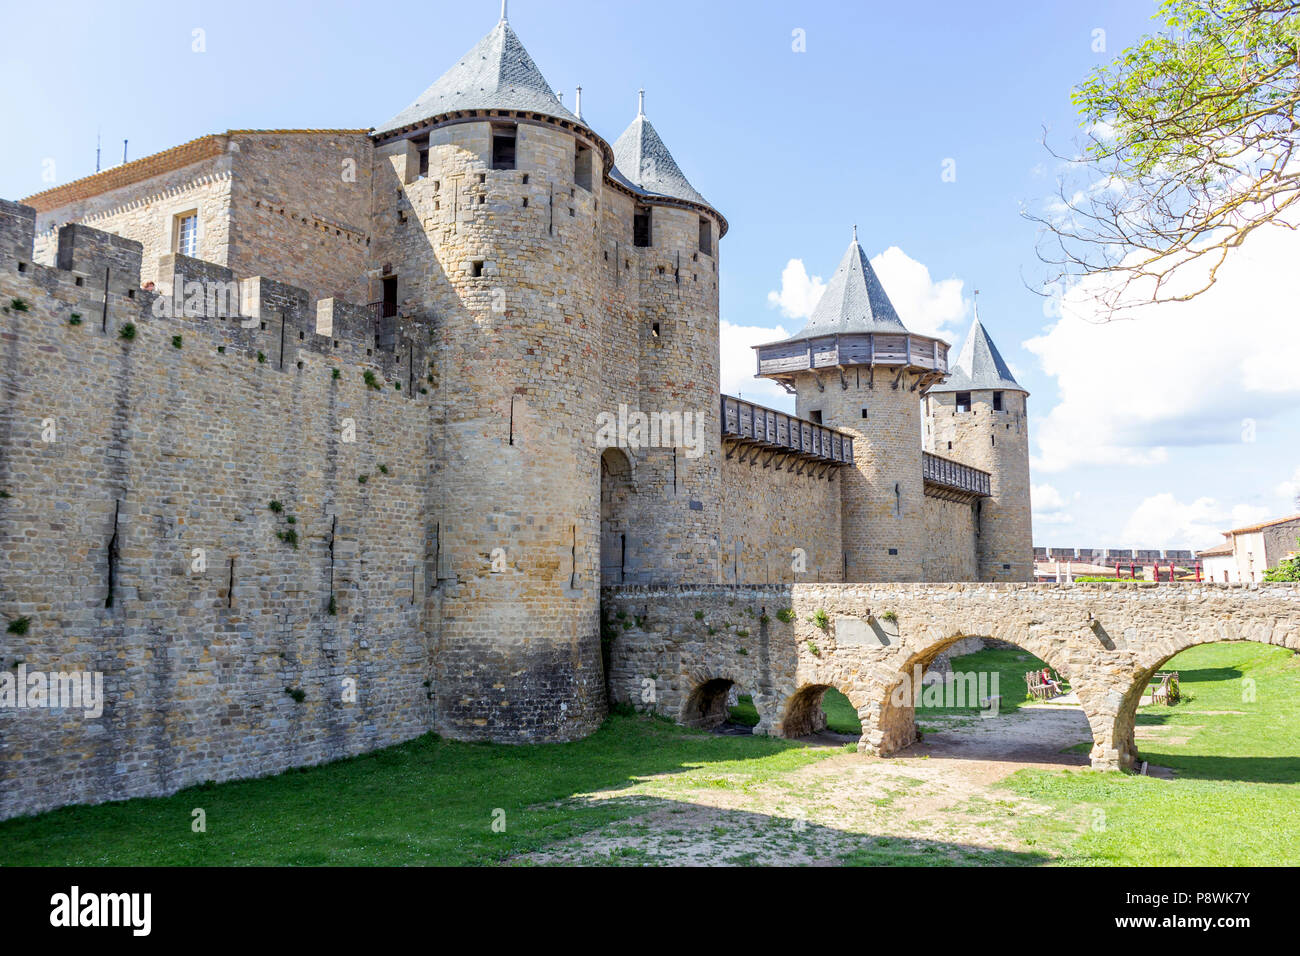 La Cité medievale di Carcassonne, dipartimento francese dell Aude, Regione Occitanie, Francia. Lo Château Comtal. Foto Stock